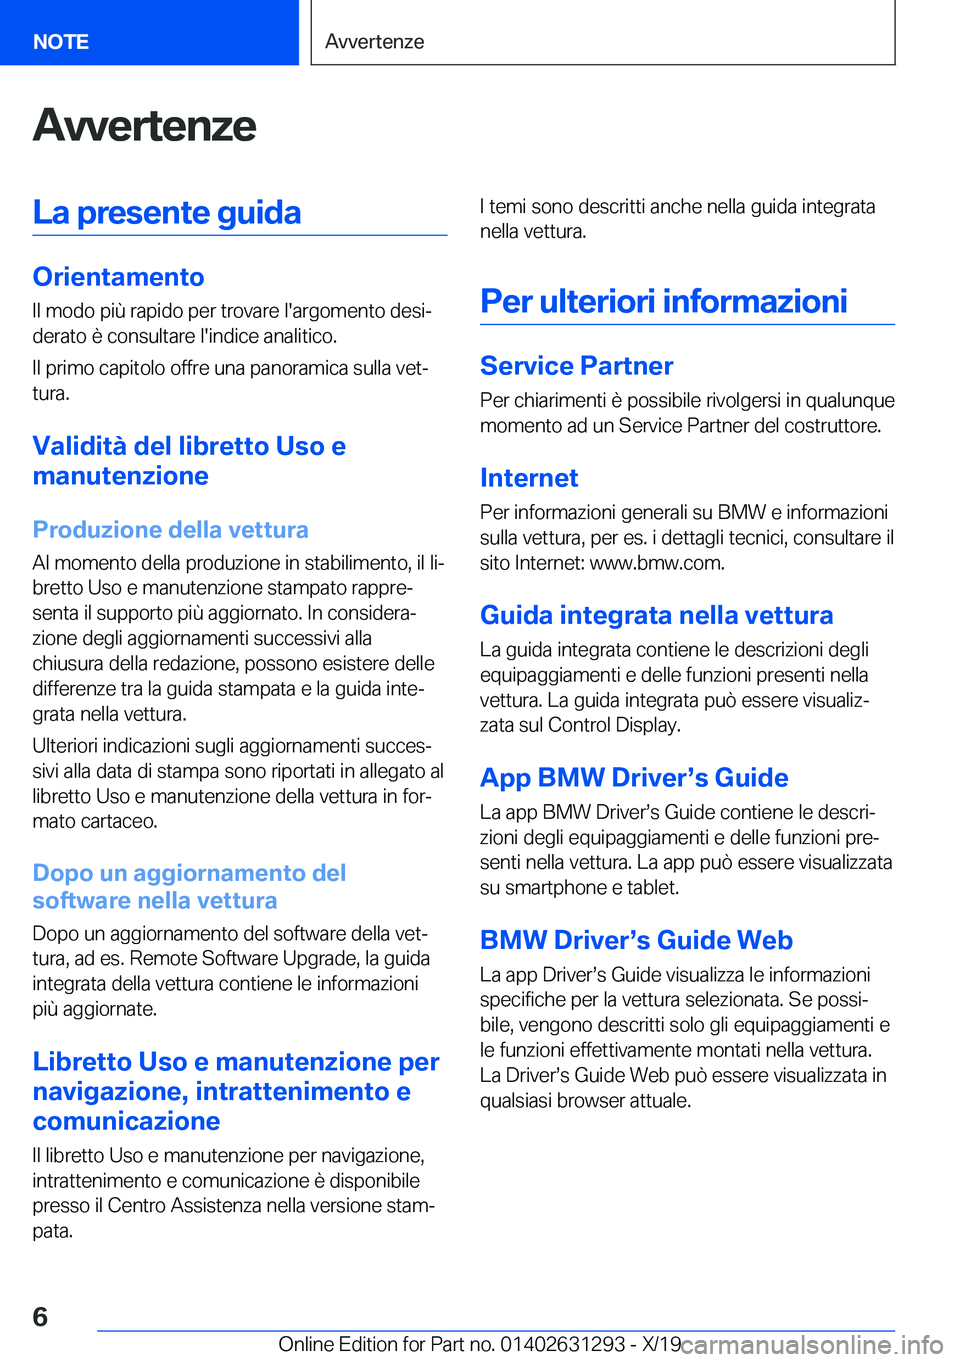 BMW M8 2020  Libretti Di Uso E manutenzione (in Italian) �A�v�v�e�r�t�e�n�z�e�L�a��p�r�e�s�e�n�t�e��g�u�i�d�a
�O�r�i�e�n�t�a�m�e�n�t�o�I�l��m�o�d�o��p�i�